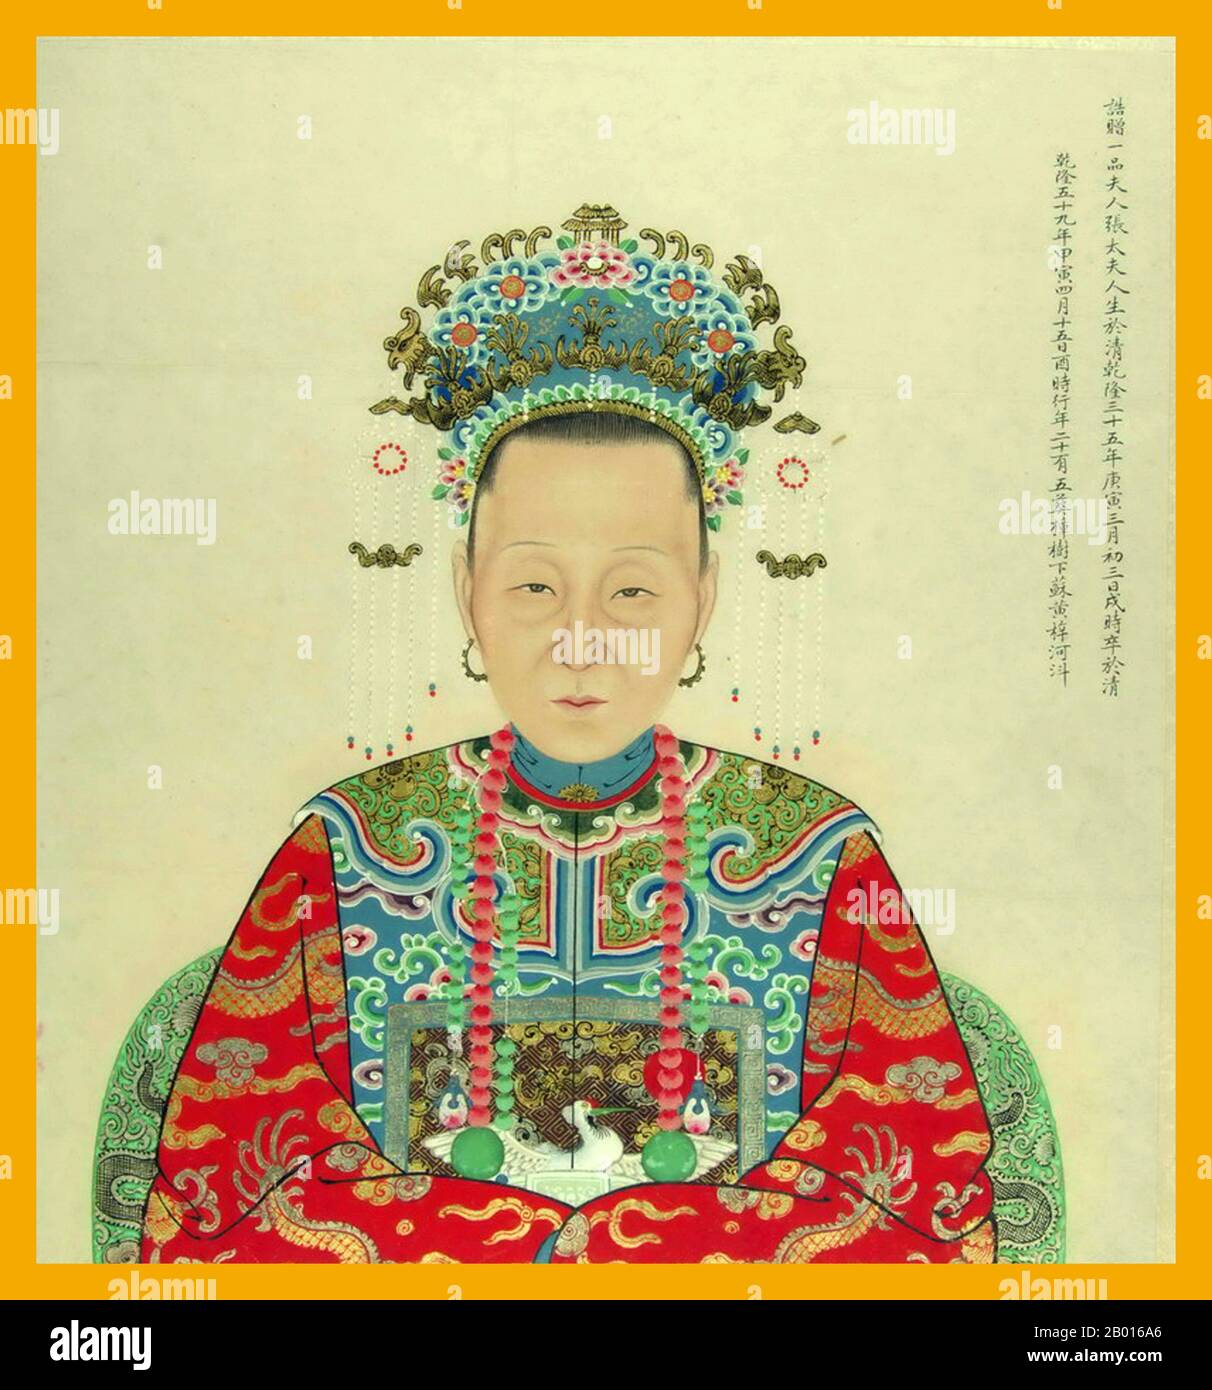 Chine : Portrait d'une dynastie Ming (1368-1644) consort impérial.Portrait d'une consort impériale de la dynastie Ming (1368-1644) vêtue de vêtements de hanfu impériaux à couronne élaborée. Banque D'Images